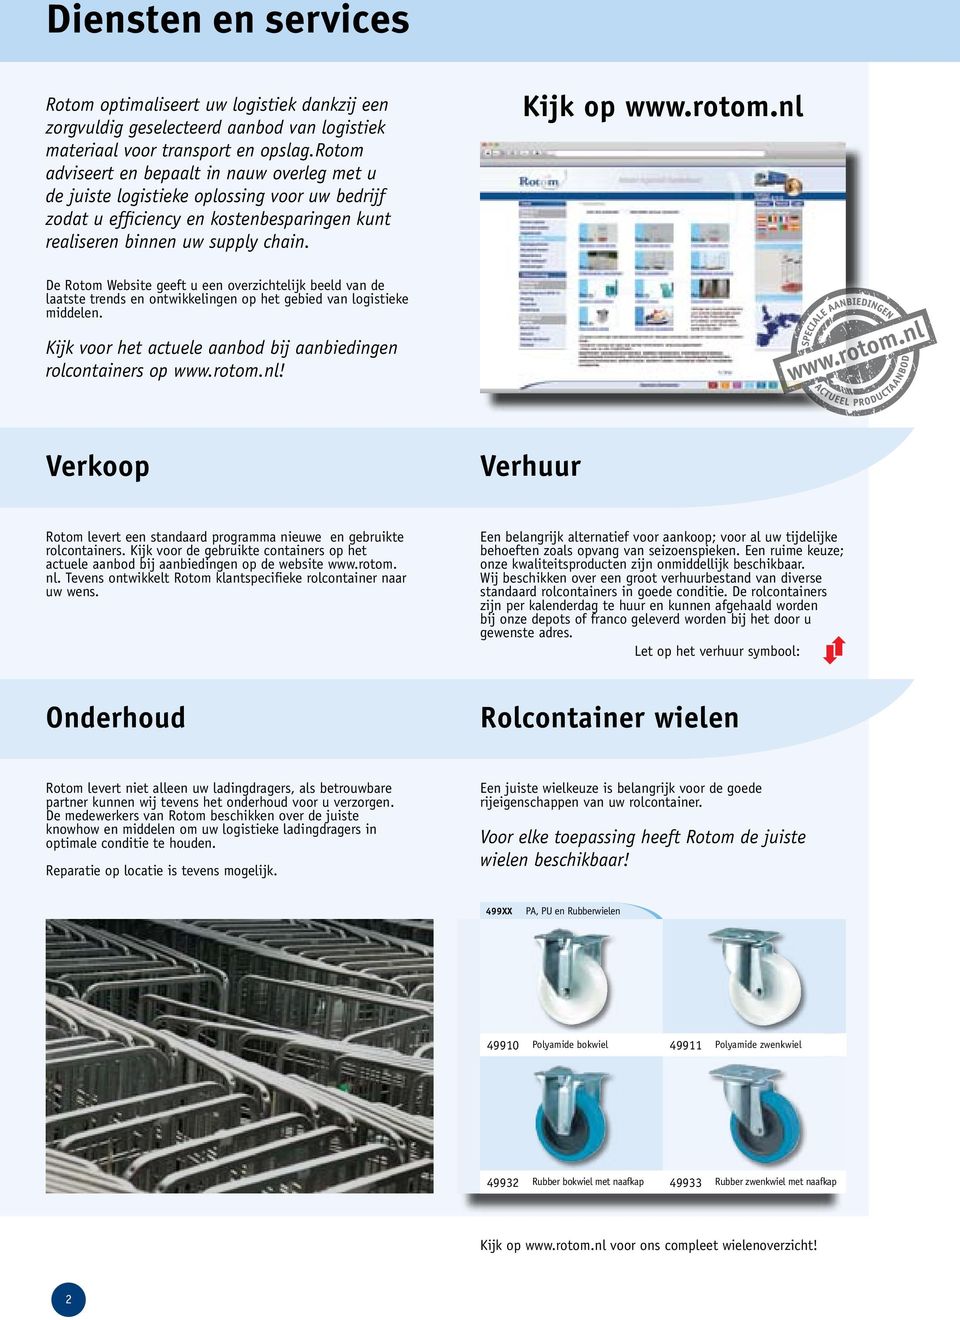 Kijk voor het actuele aanbod bij aanbiedingen rolcontainers op www.rotom.nl! www.rotom.nl Verkoop Verhuur Rotom levert een standaard programma nieuwe en gebruikte rolcontainers.